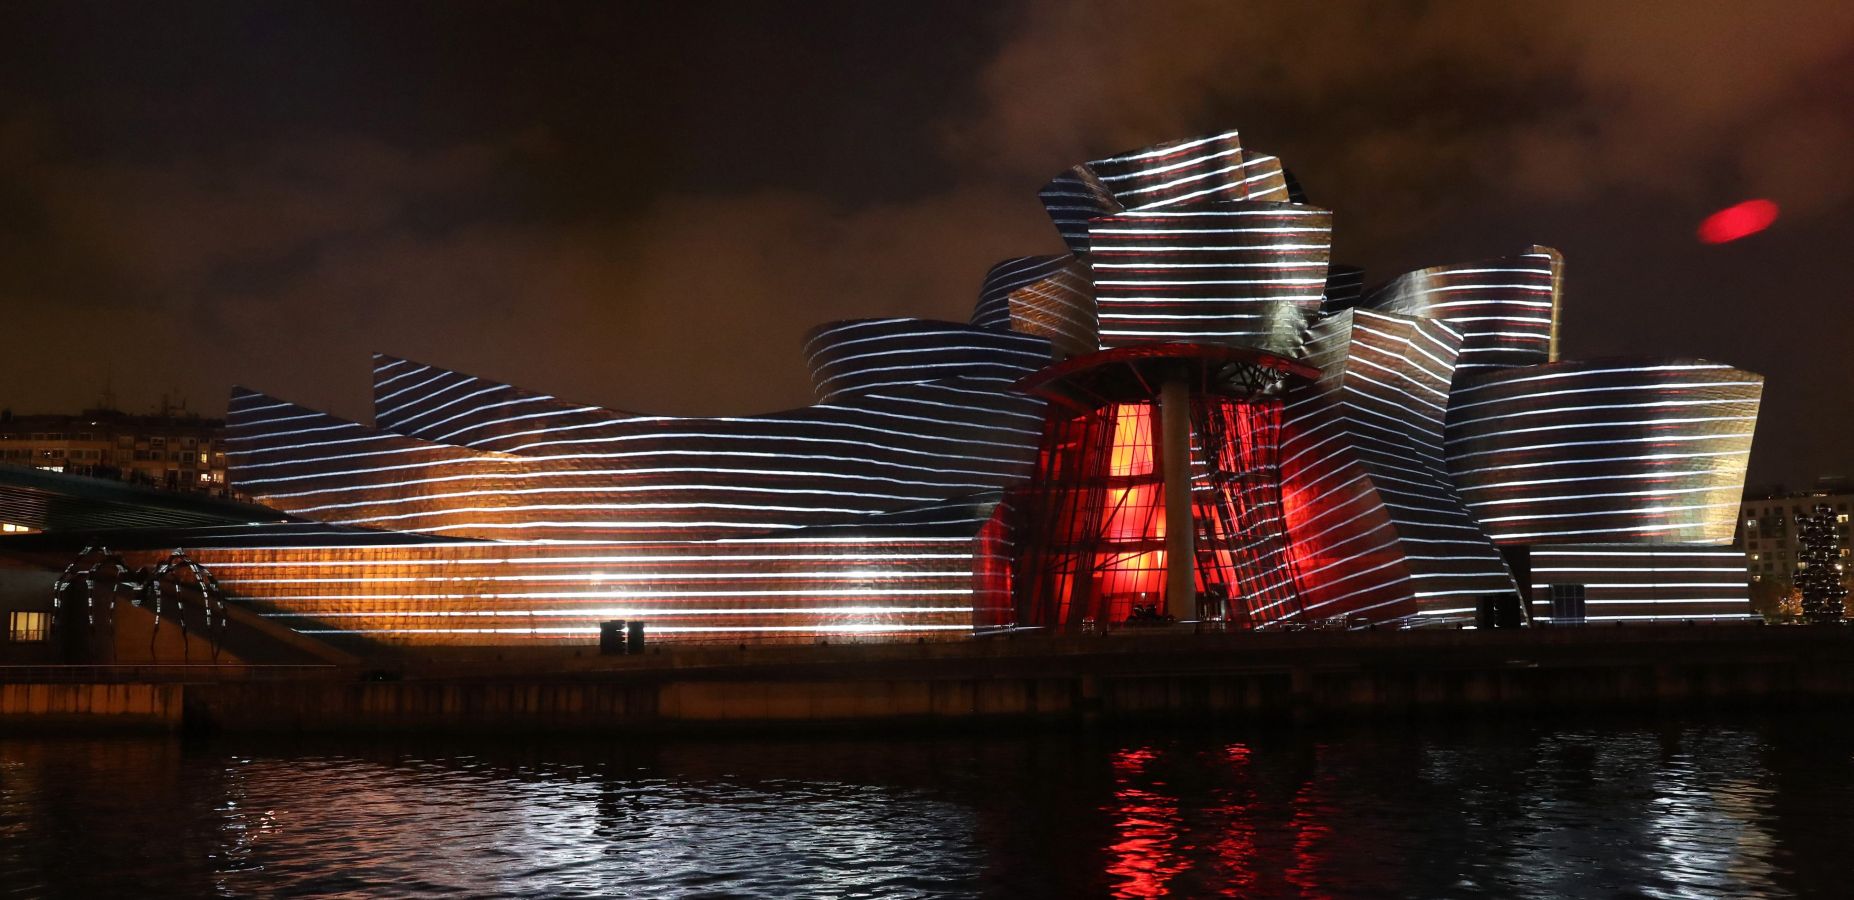 El vigésimo aniversario del Guggenheim llenó de luz el museo con el espectáculo 'Reflections', que no defraudó a nadie